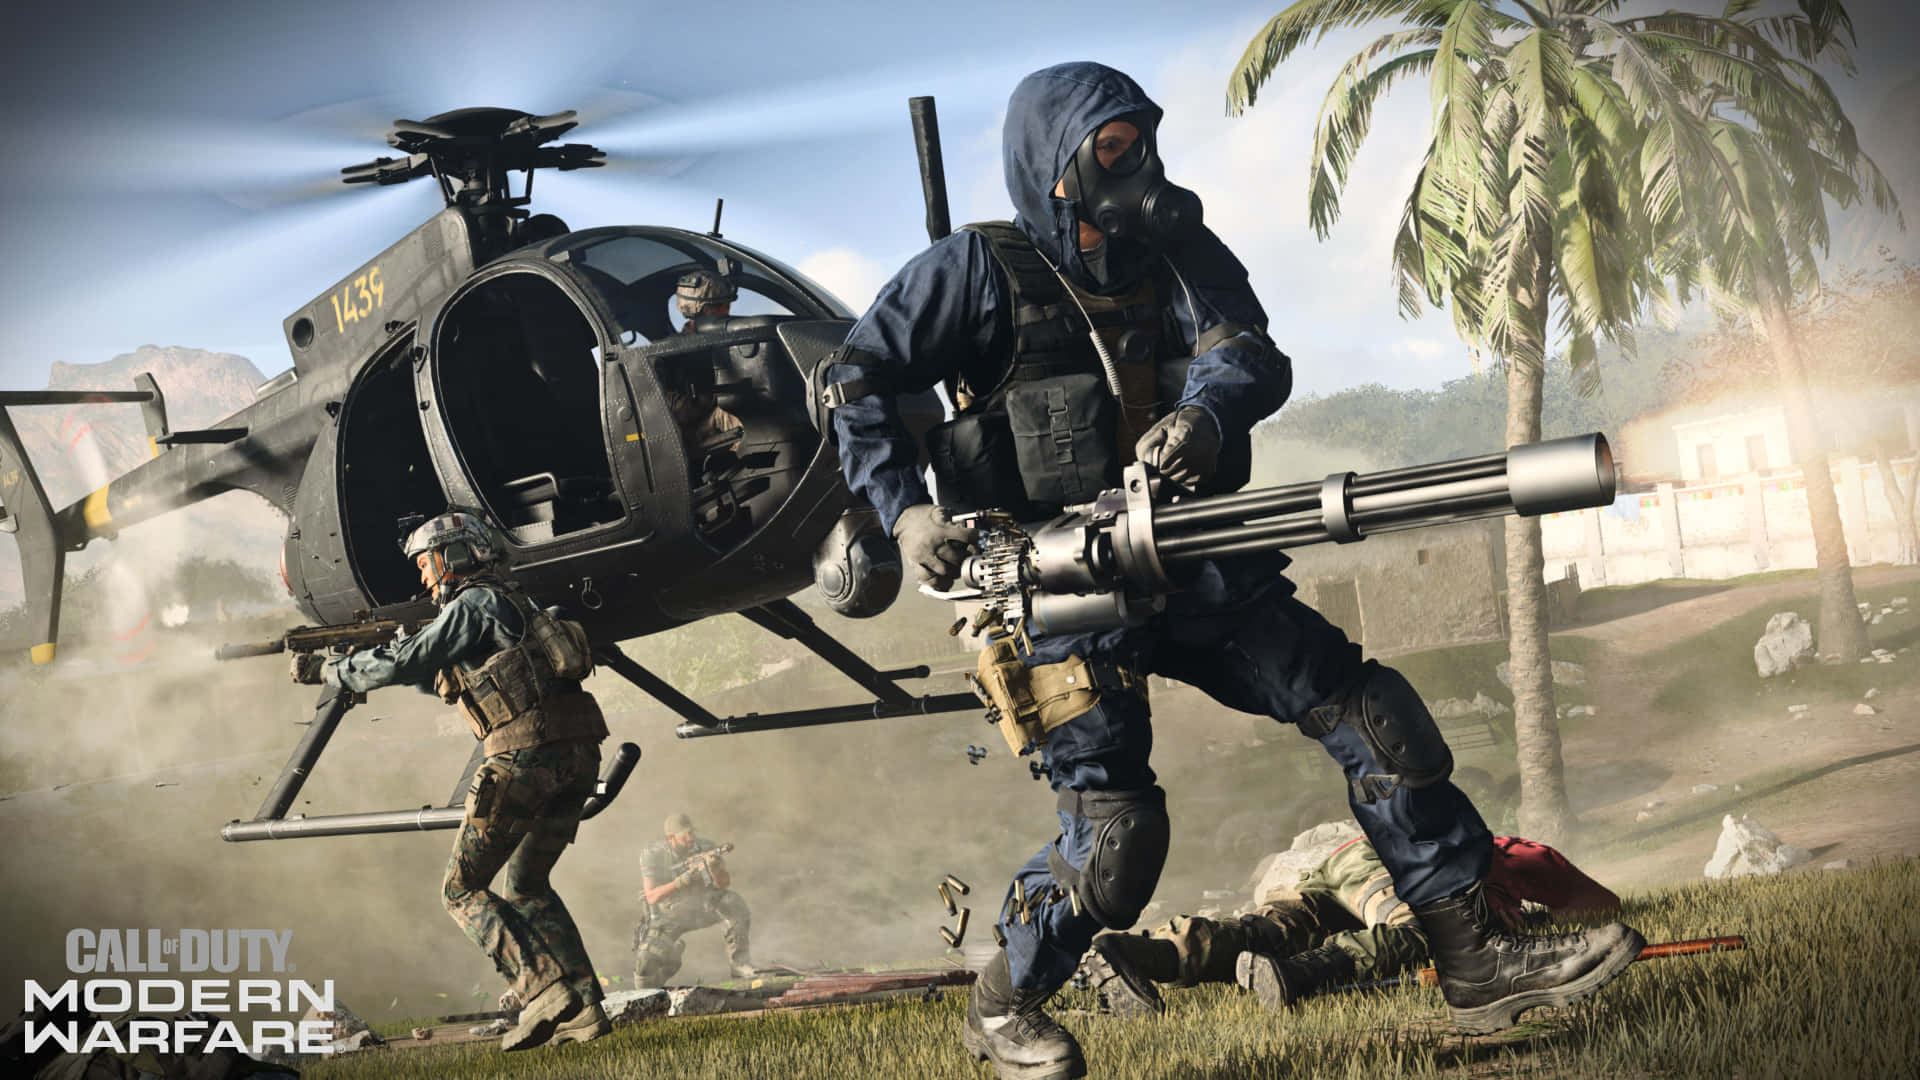 Cannoniantiaerei Pronti Ad Abbattere Le Minacce In Arrivo In Call Of Duty: Modern Warfare